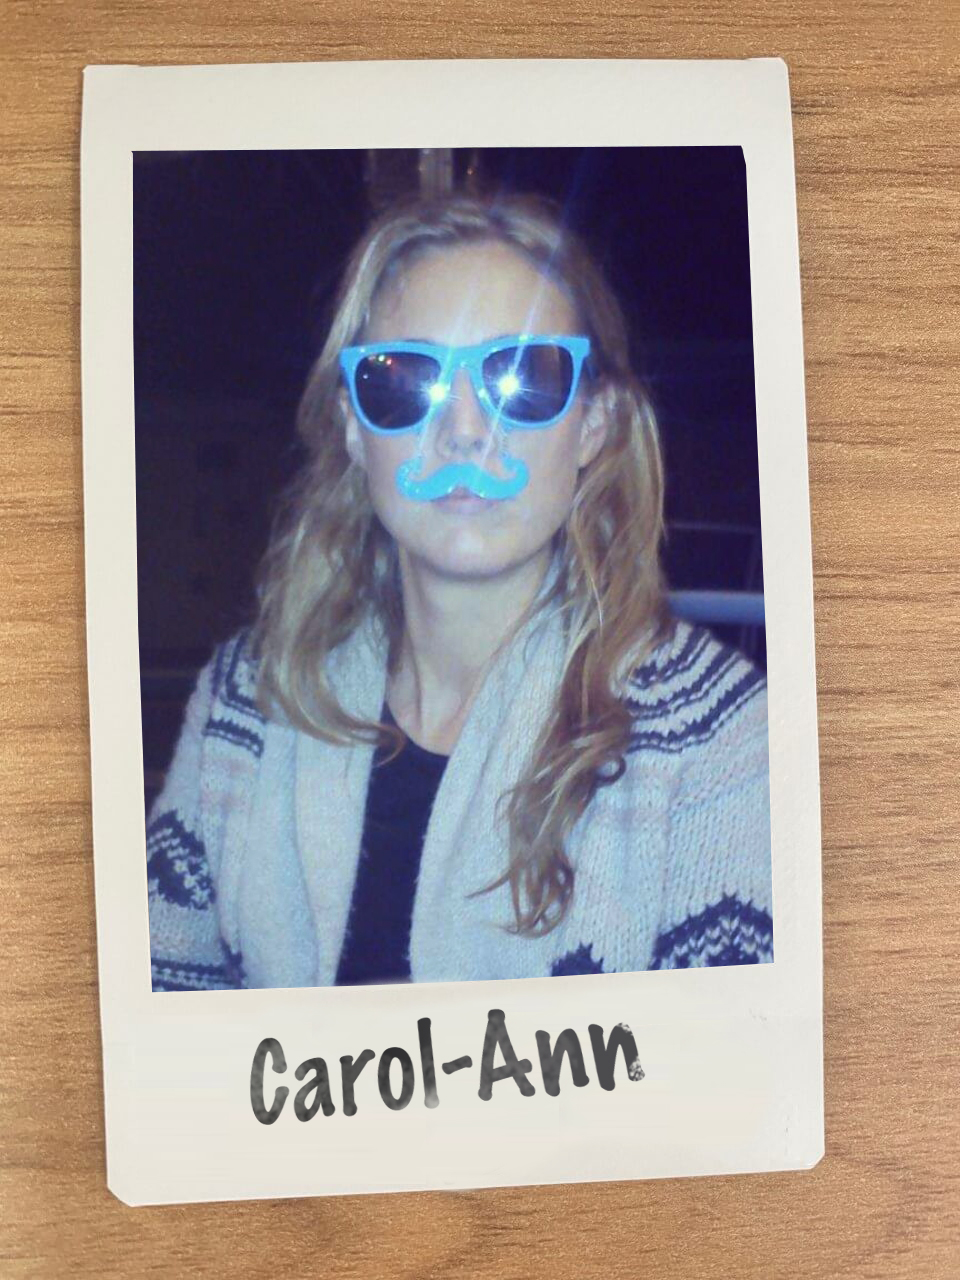 Carol-Ann Cronin - Staff polaroid